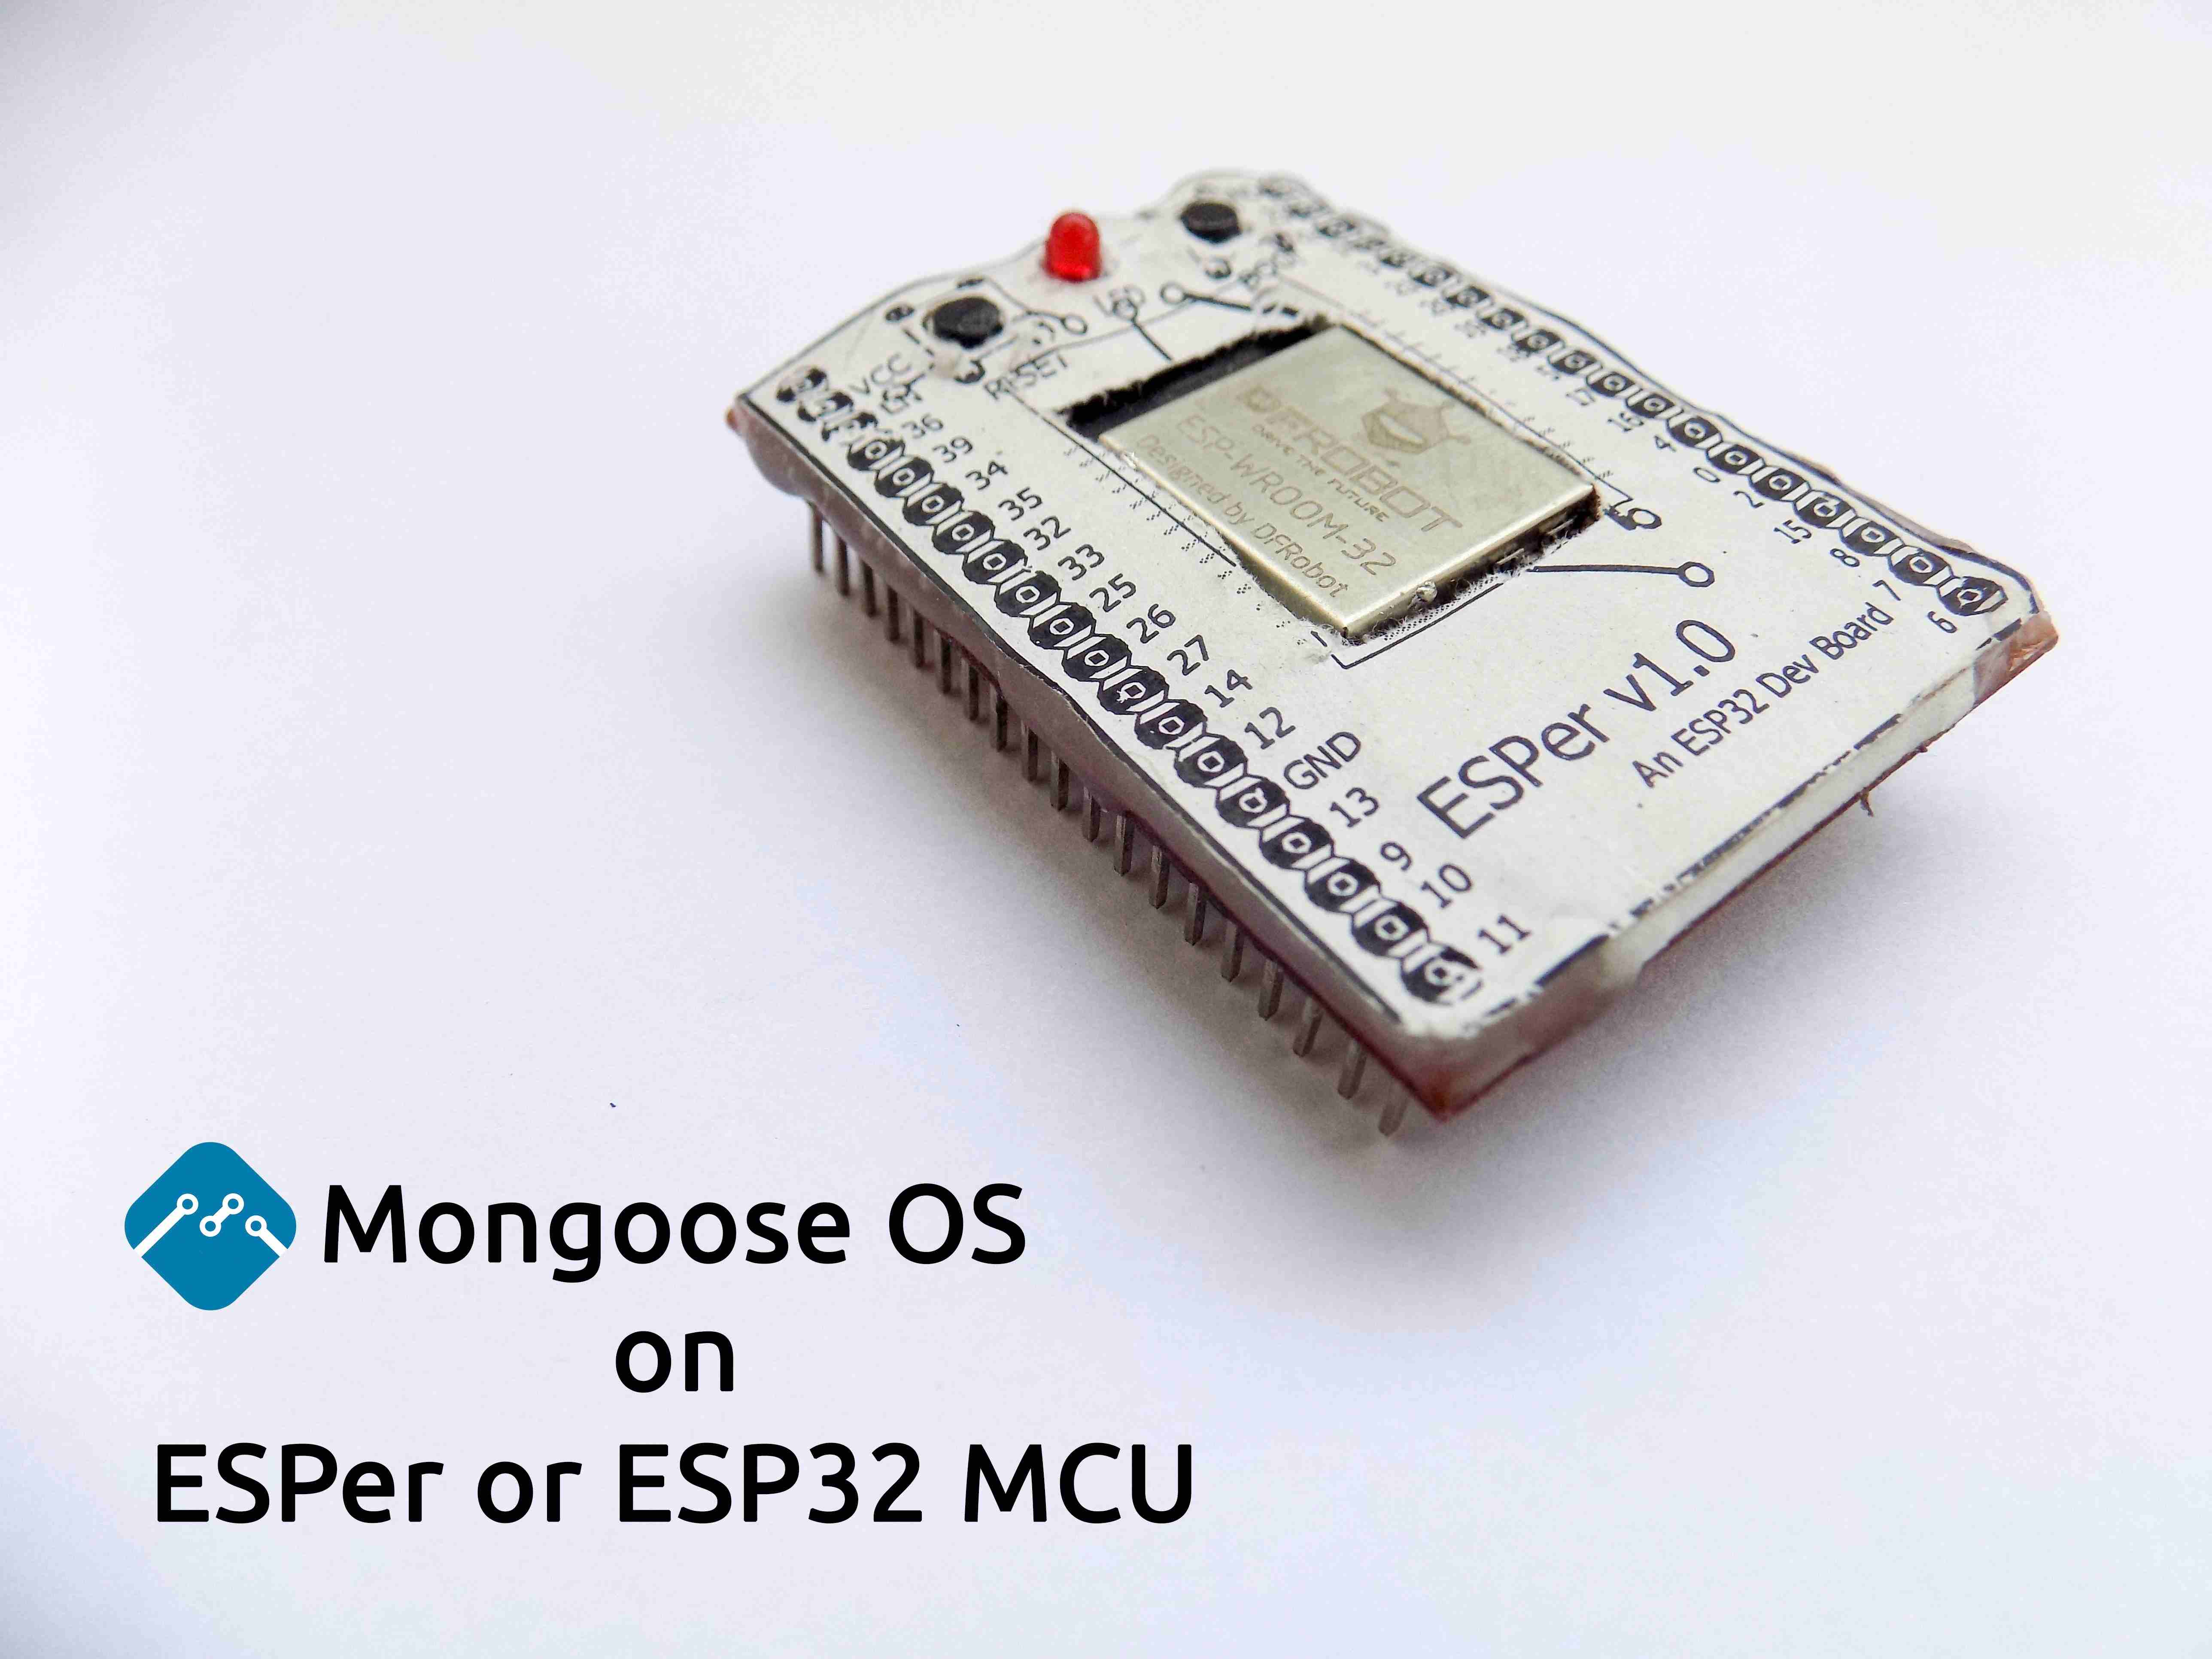 How to install Mongoose OS on ESPer or ESP32